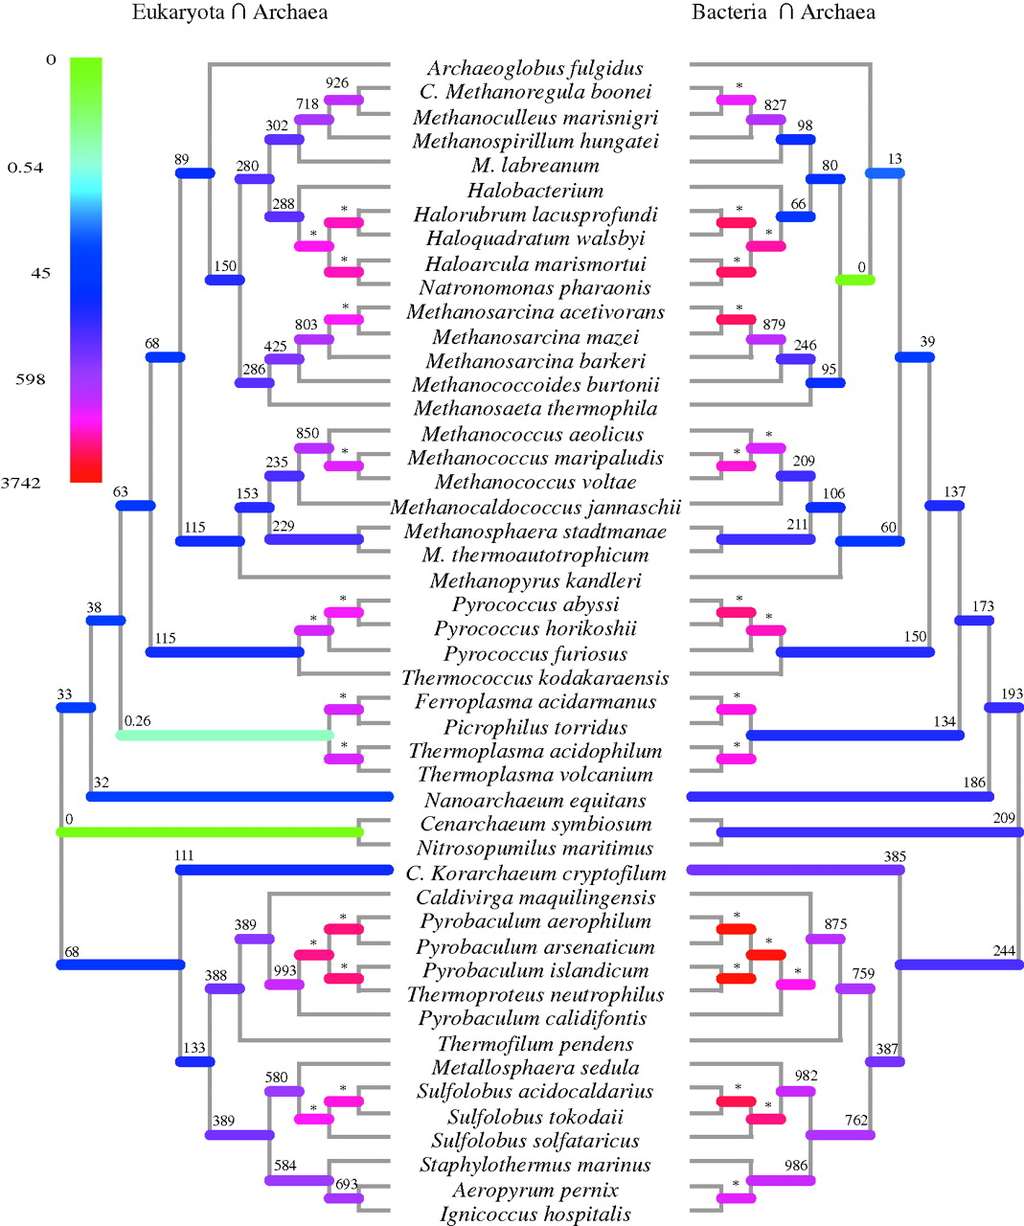 Des arbres phylogénétiques d'archées ont pu être construits par les chercheurs de l'université d'Oxford grâce aux bases de données de séquences d'ADN génomiques. © <em>Proceedings of the Royal Society B</em>